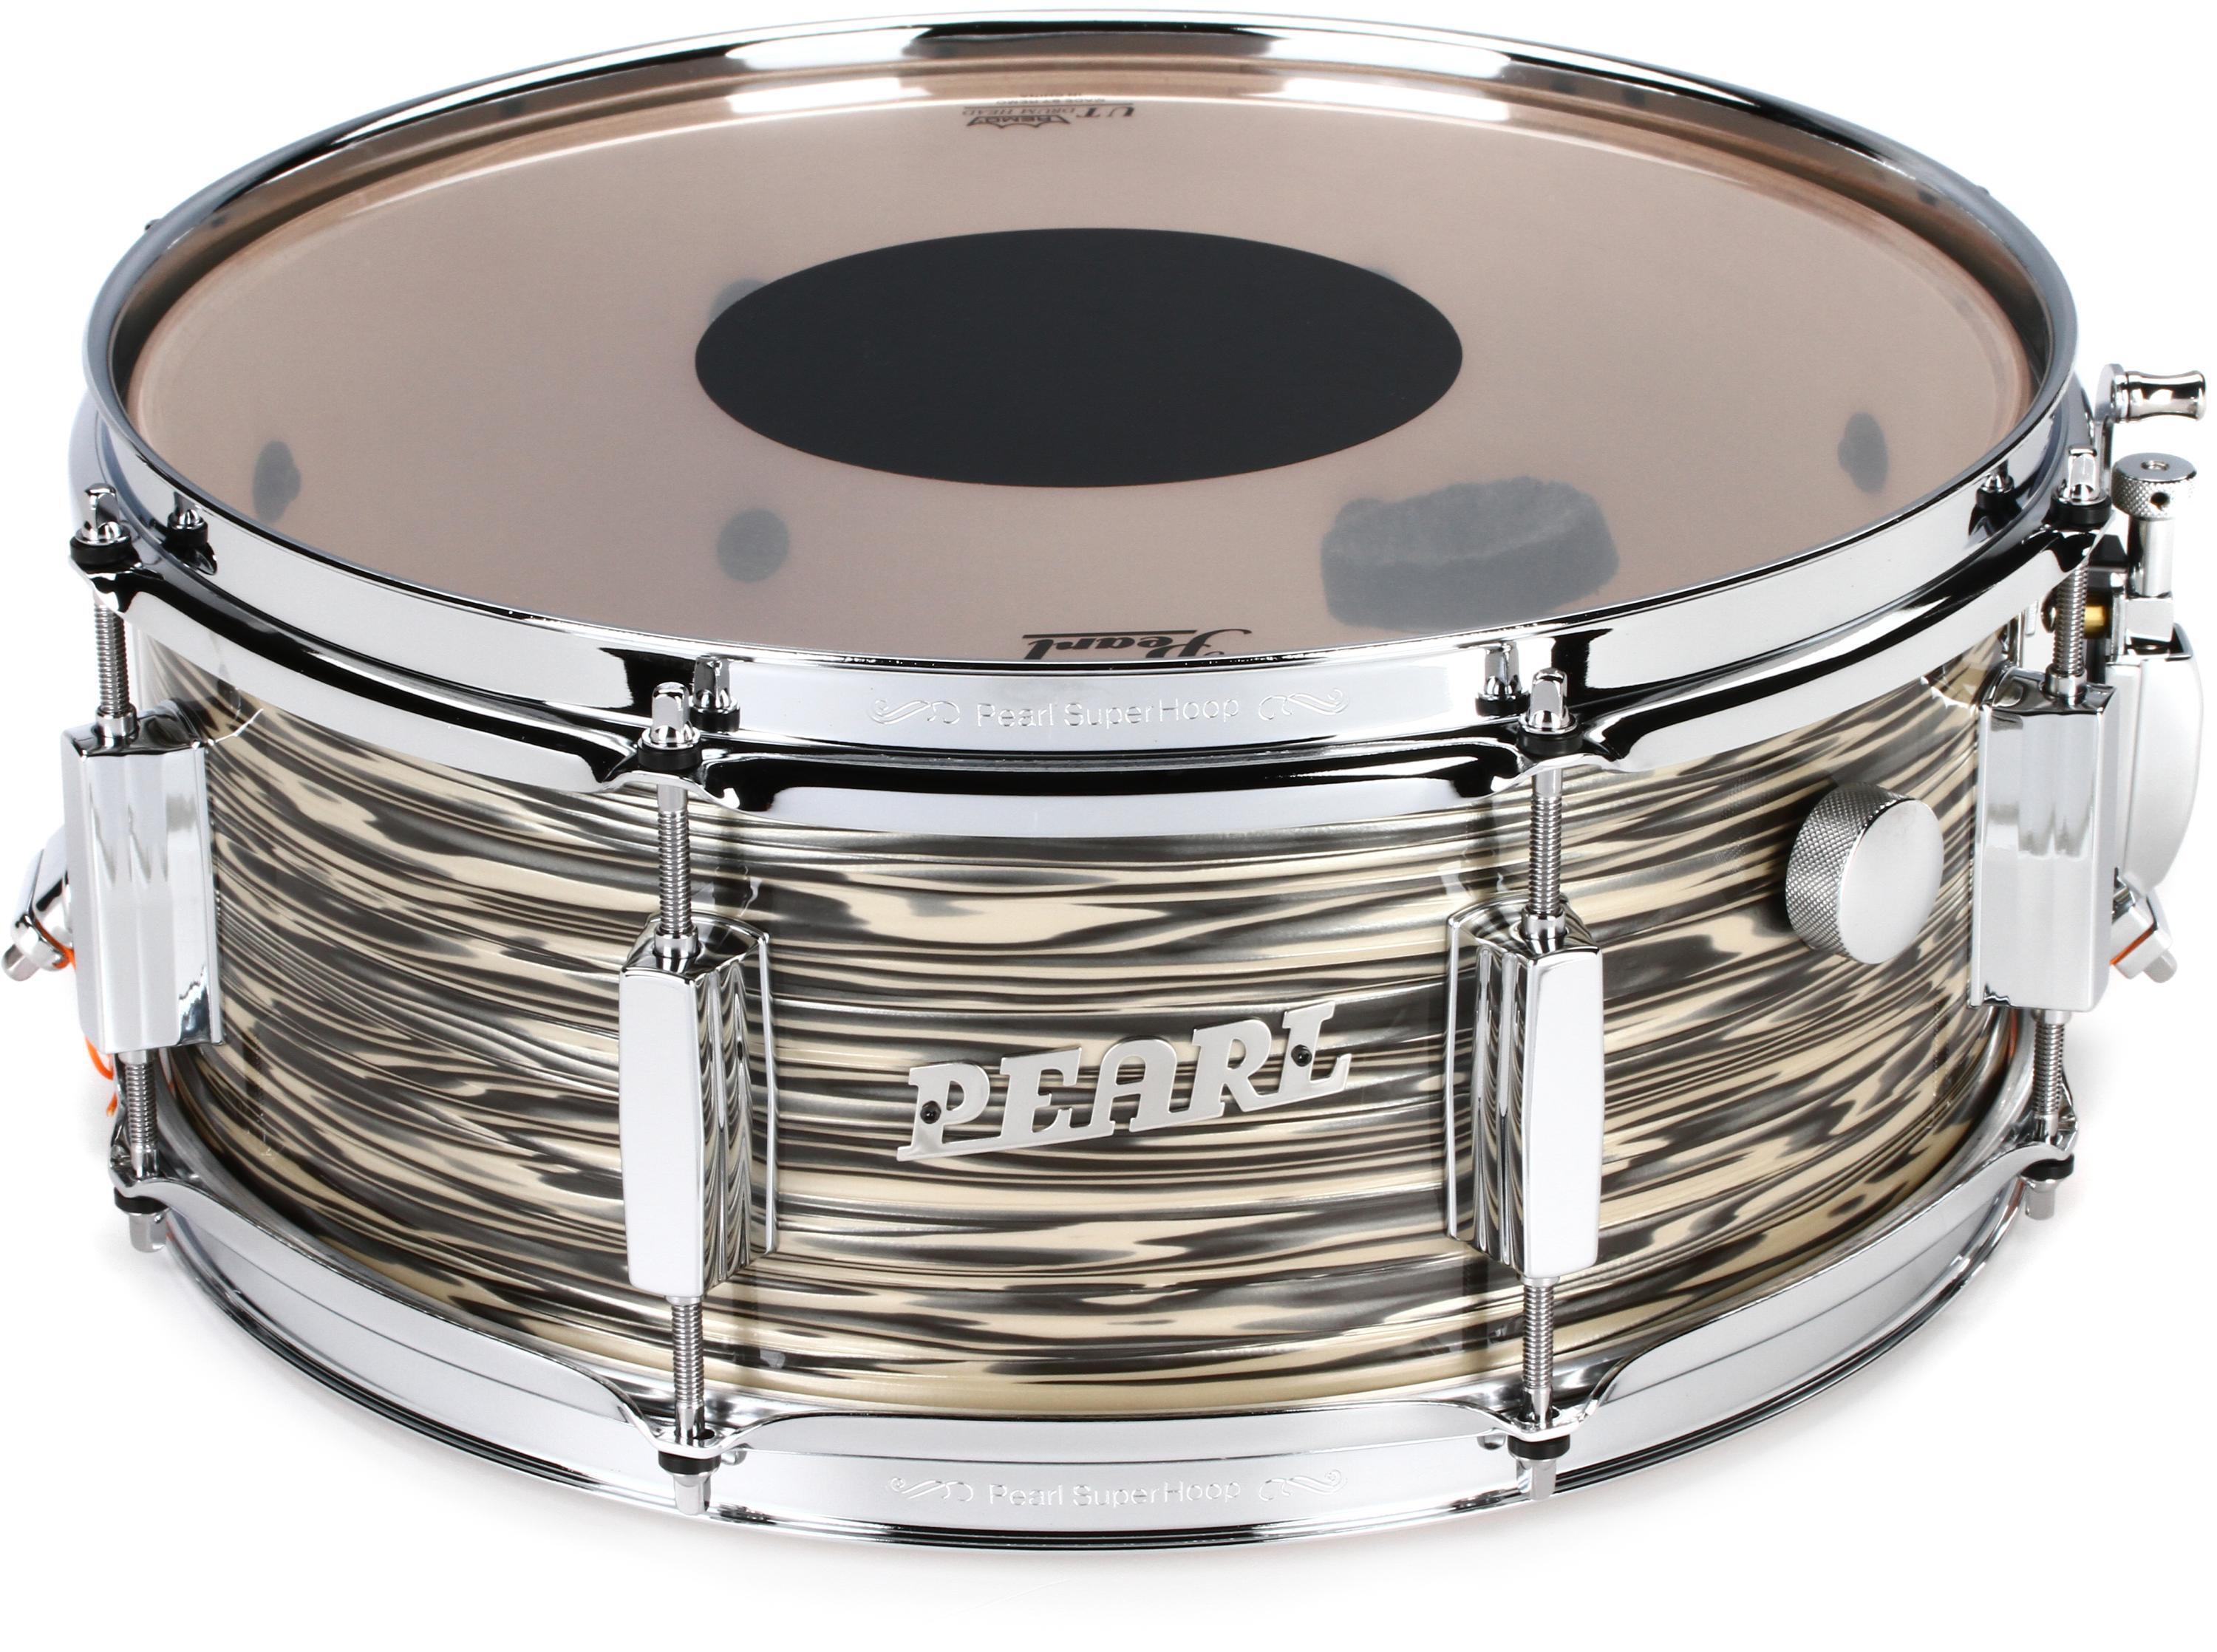 President Series Deluxe Snare Drum - 14 x 5.5 inch - Desert Ripple